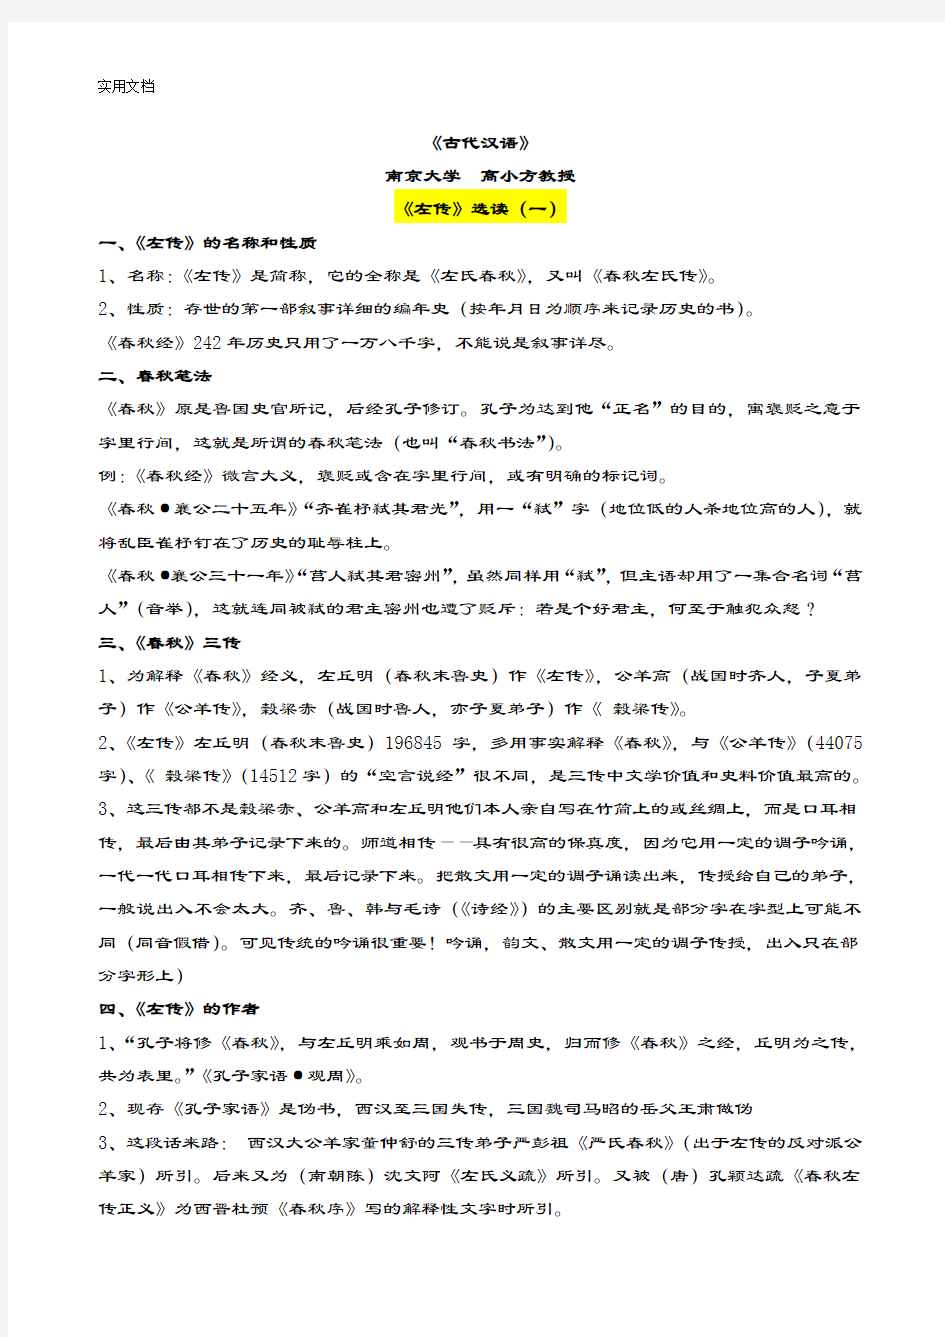 古代汉语《左传》选读(南京大学高小方)